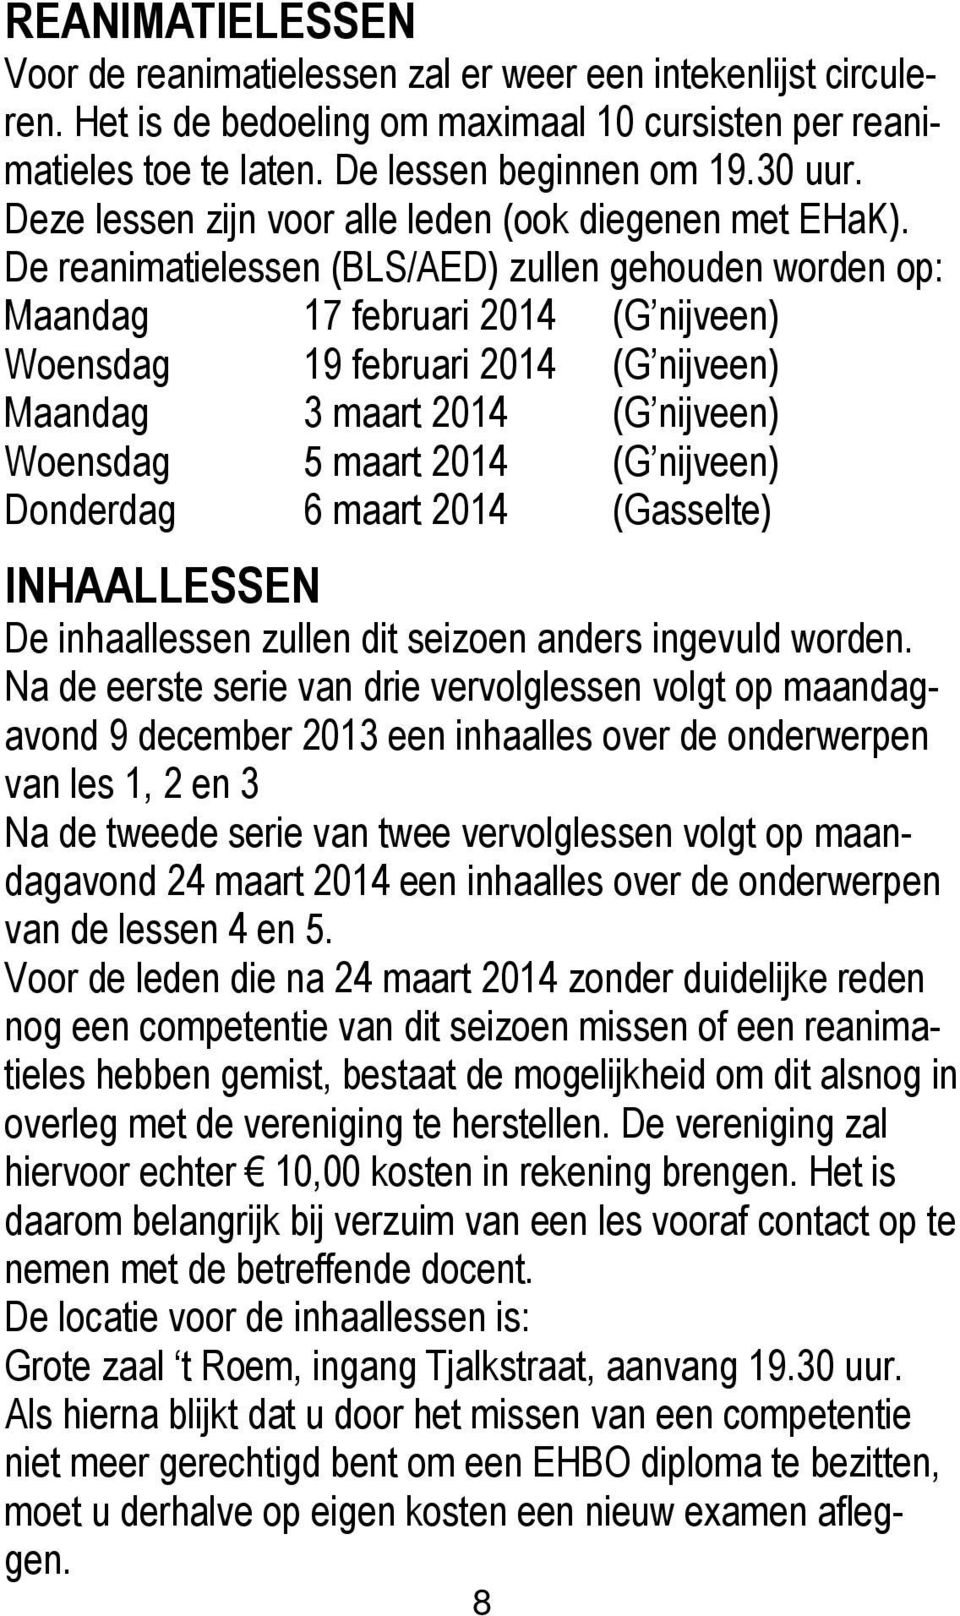 De reanimatielessen (BLS/AED) zullen gehouden worden op: Maandag 17 februari 2014 (G nijveen) Woensdag 19 februari 2014 (G nijveen) Maandag 3 maart 2014 (G nijveen) Woensdag 5 maart 2014 (G nijveen)